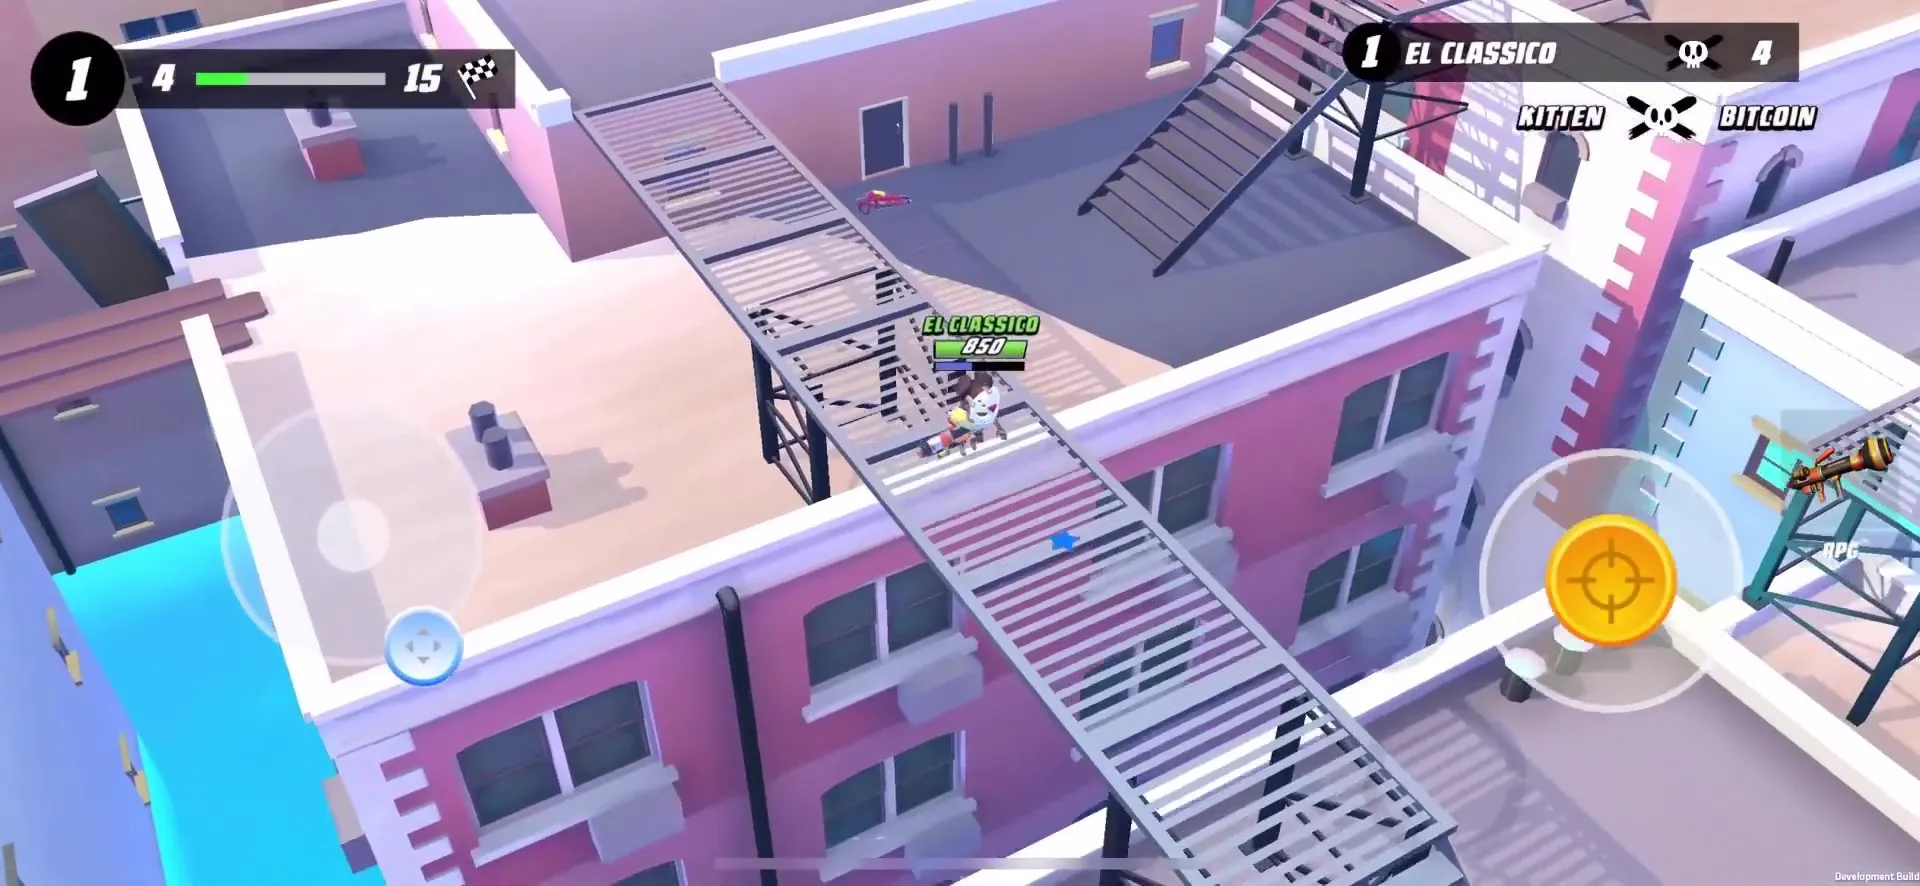 Blast Royale Game Screen Crossing Roof Bridge